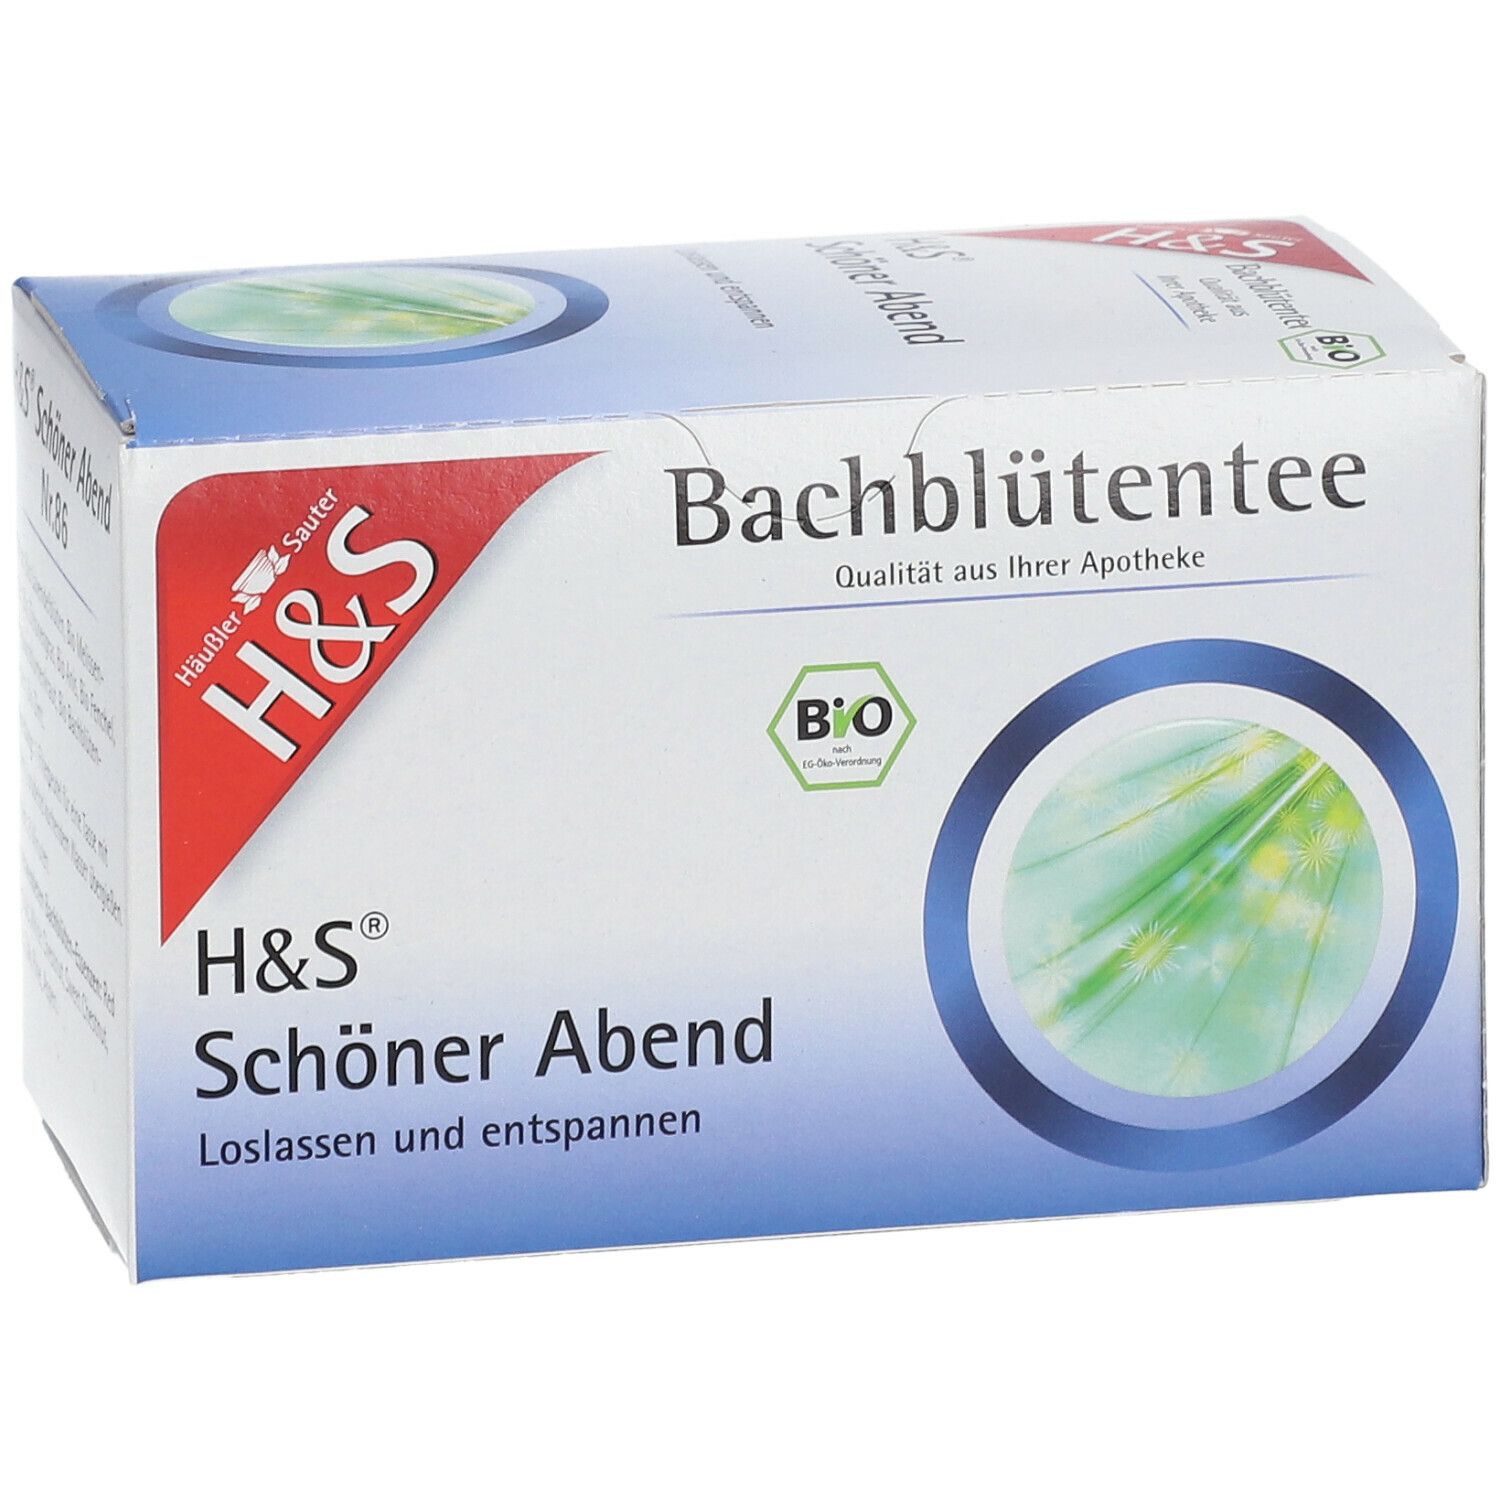 H&S® Bachblütentee Schöner Abend Nr. 86